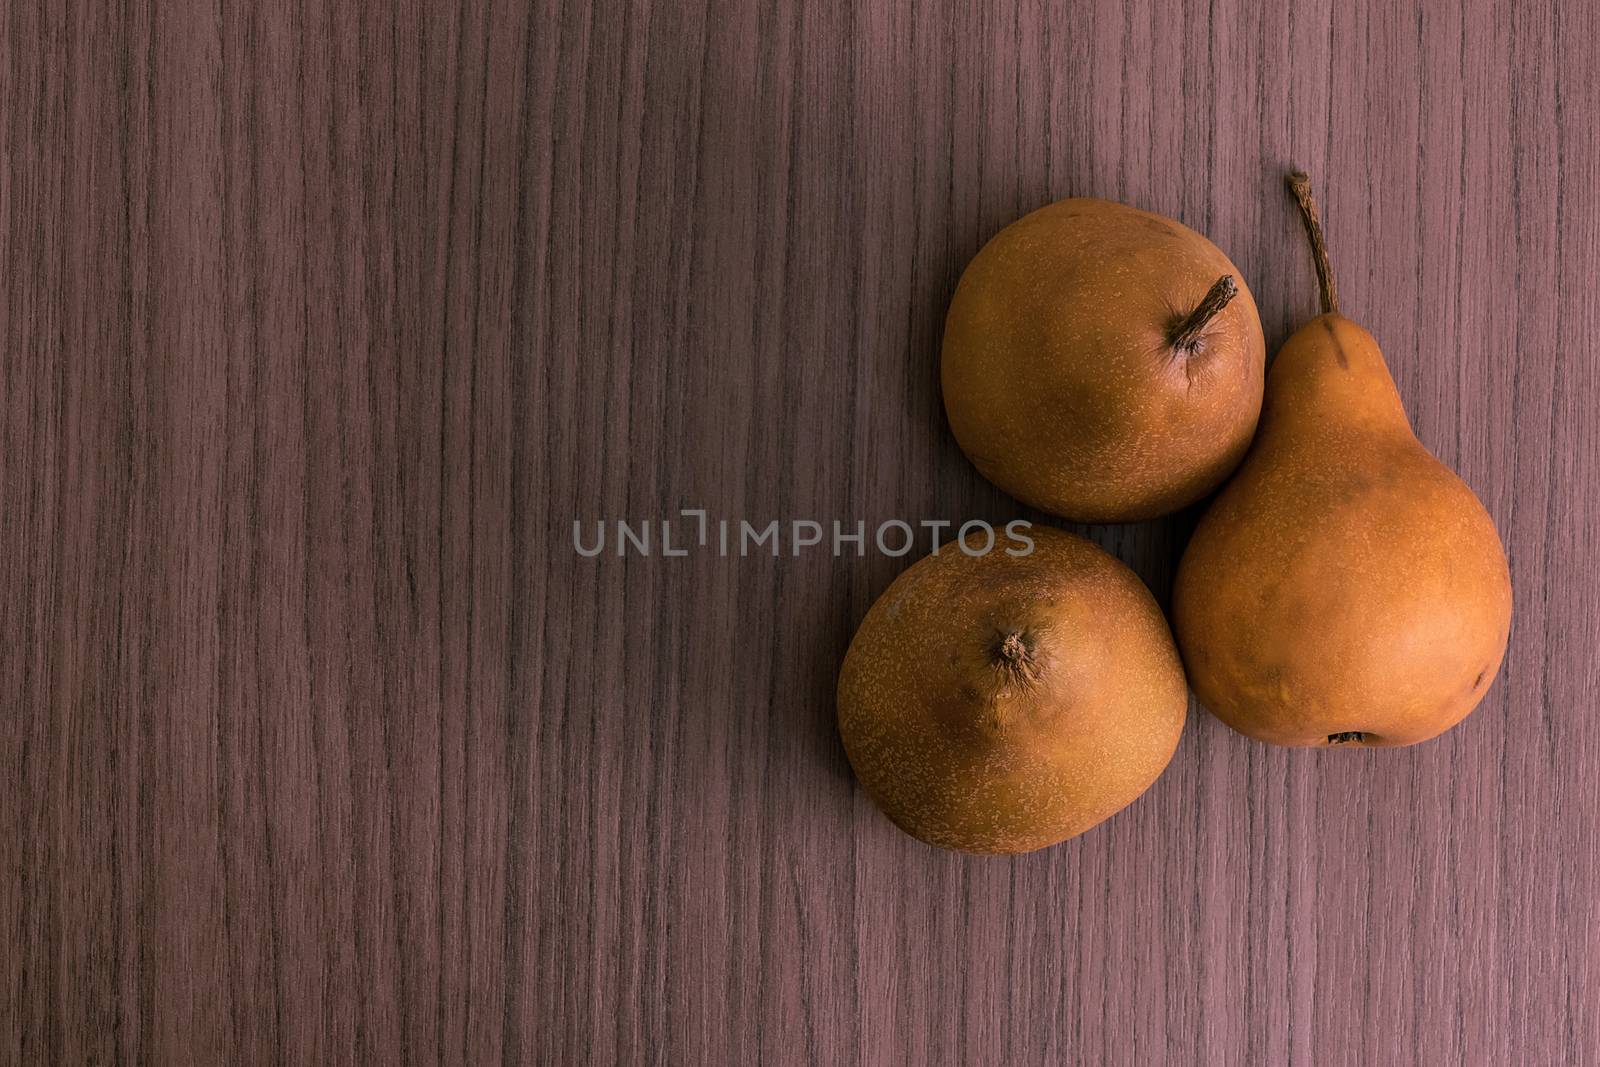 Three pears by dalomo84